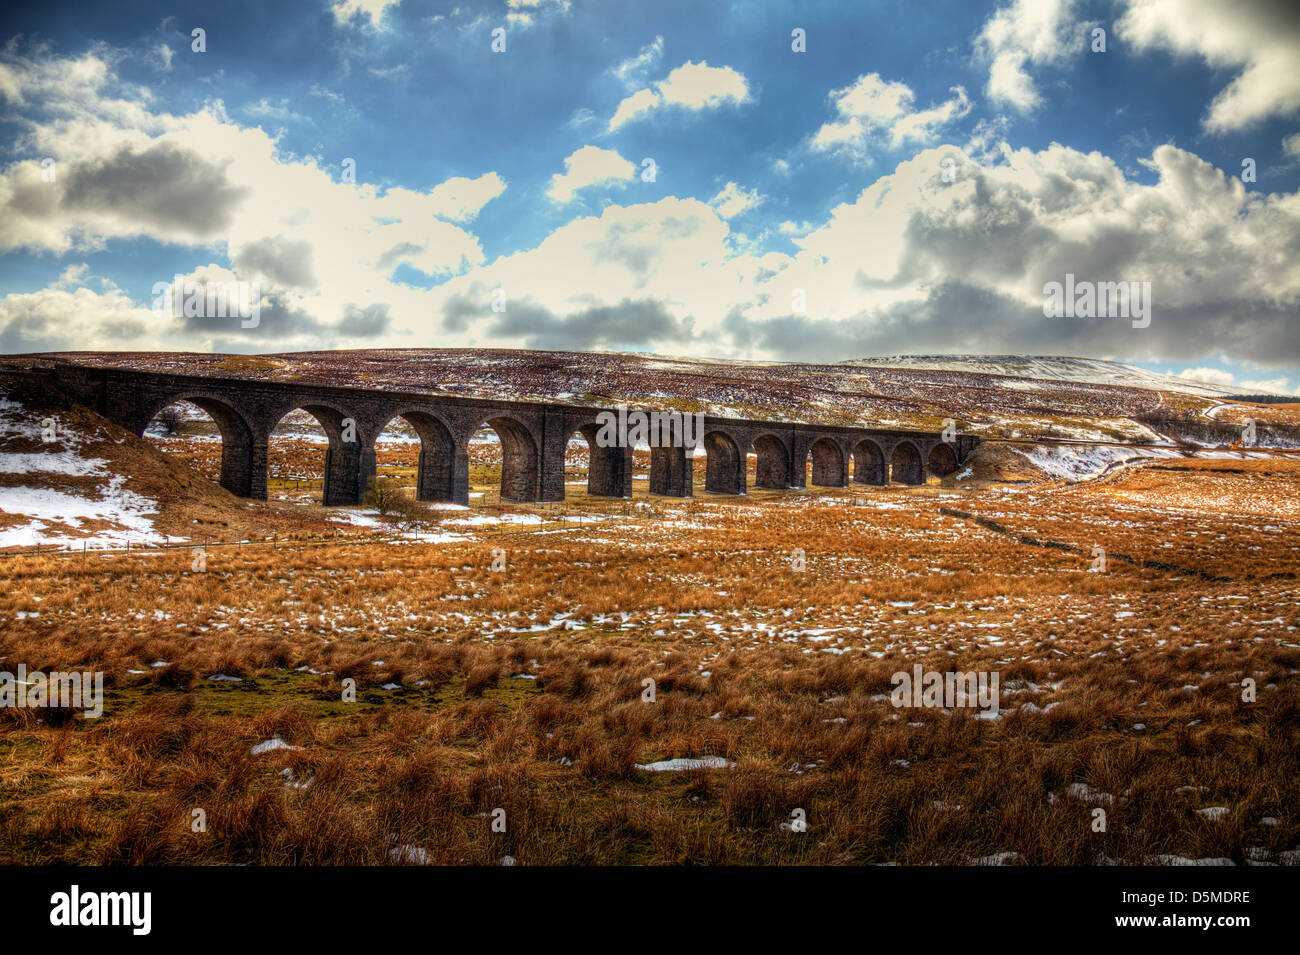 La linea ferroviaria è il famoso arrivino a Carlisle linea principale viadotto Yorkshire Dales, UK, Inghilterra Foto Stock